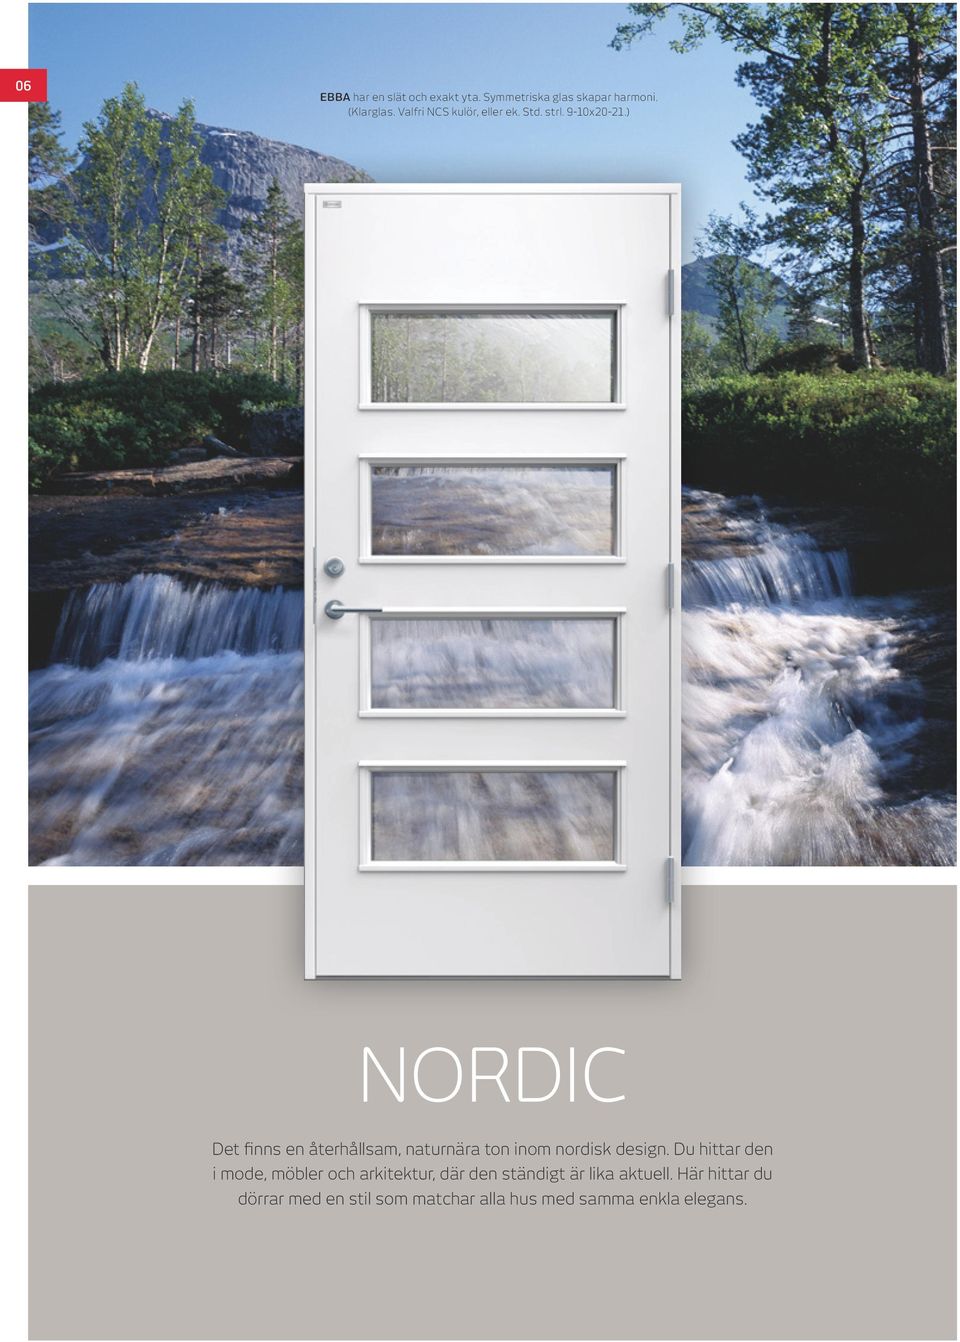 ) NORDIC Det finns en återhållsam, naturnära ton inom nordisk design.